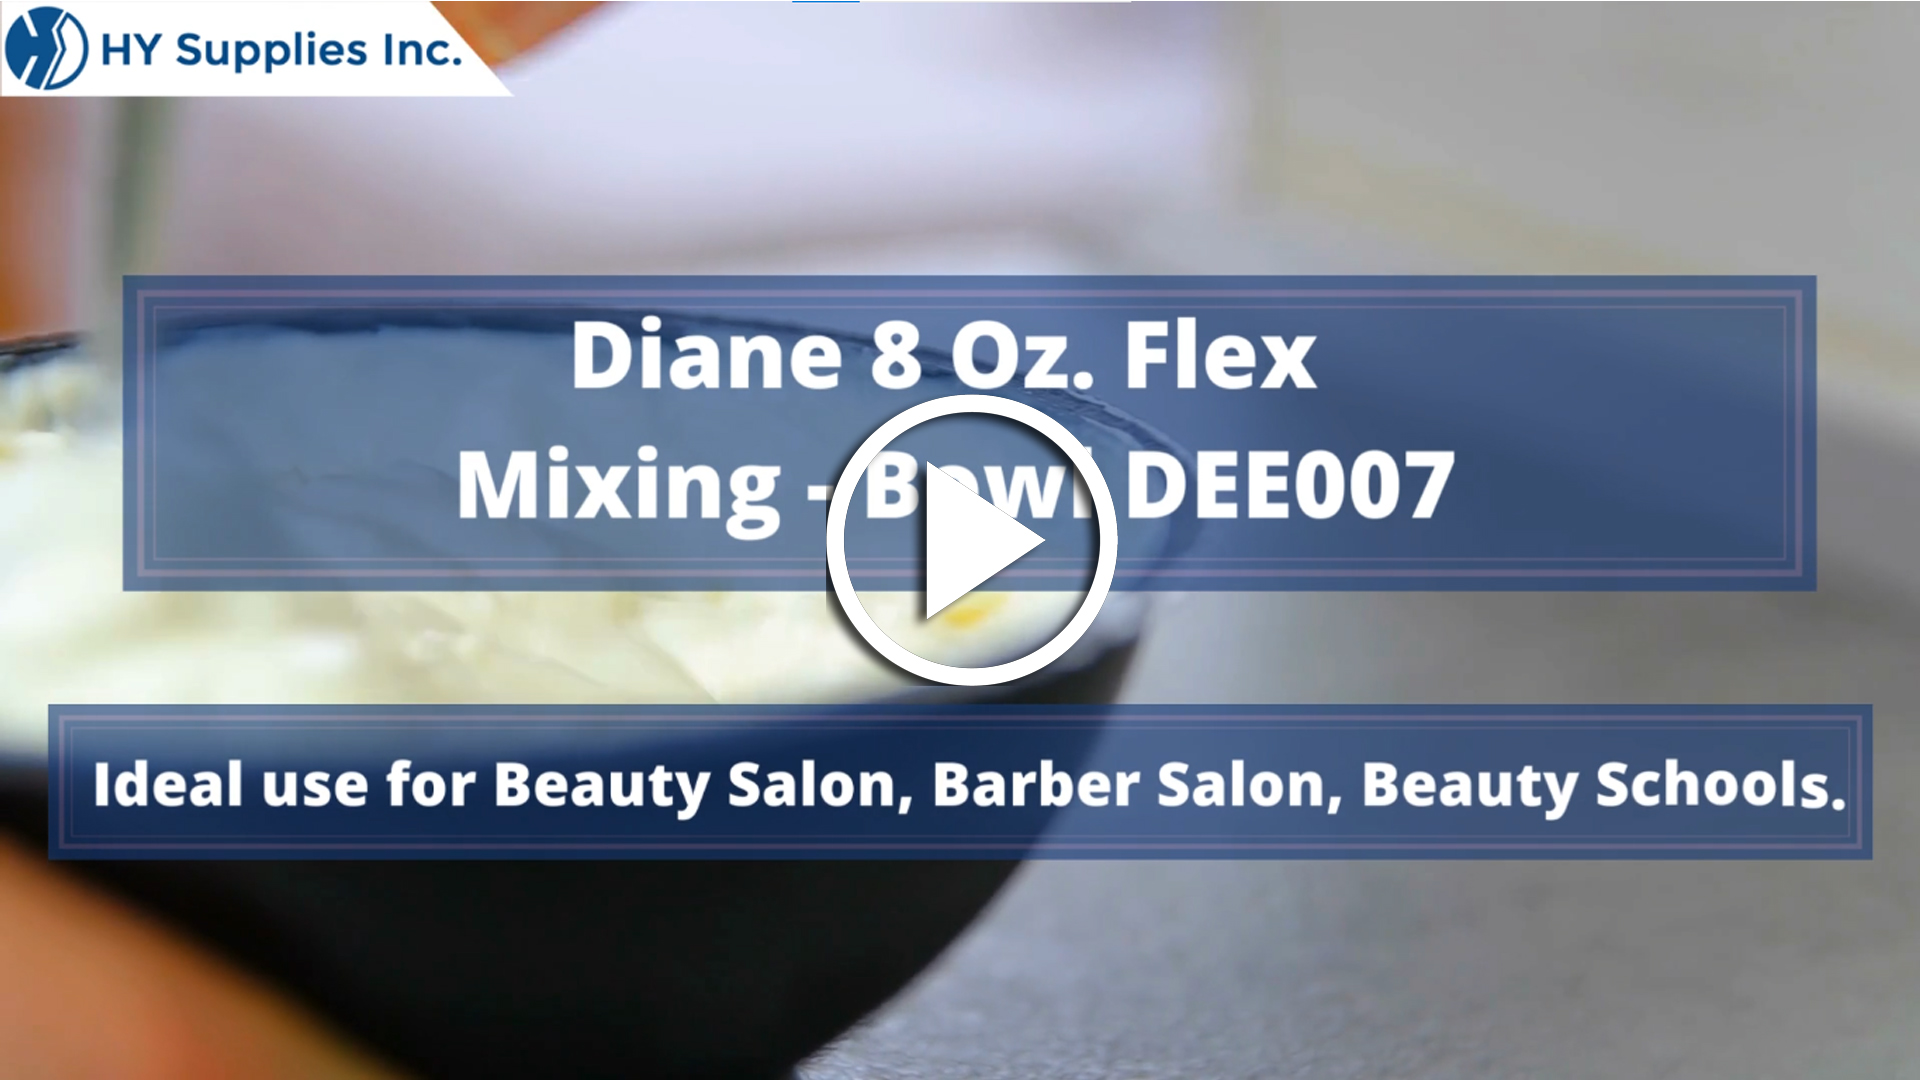 Diane 8 Oz. Flex Mixing Bowl #DEE007